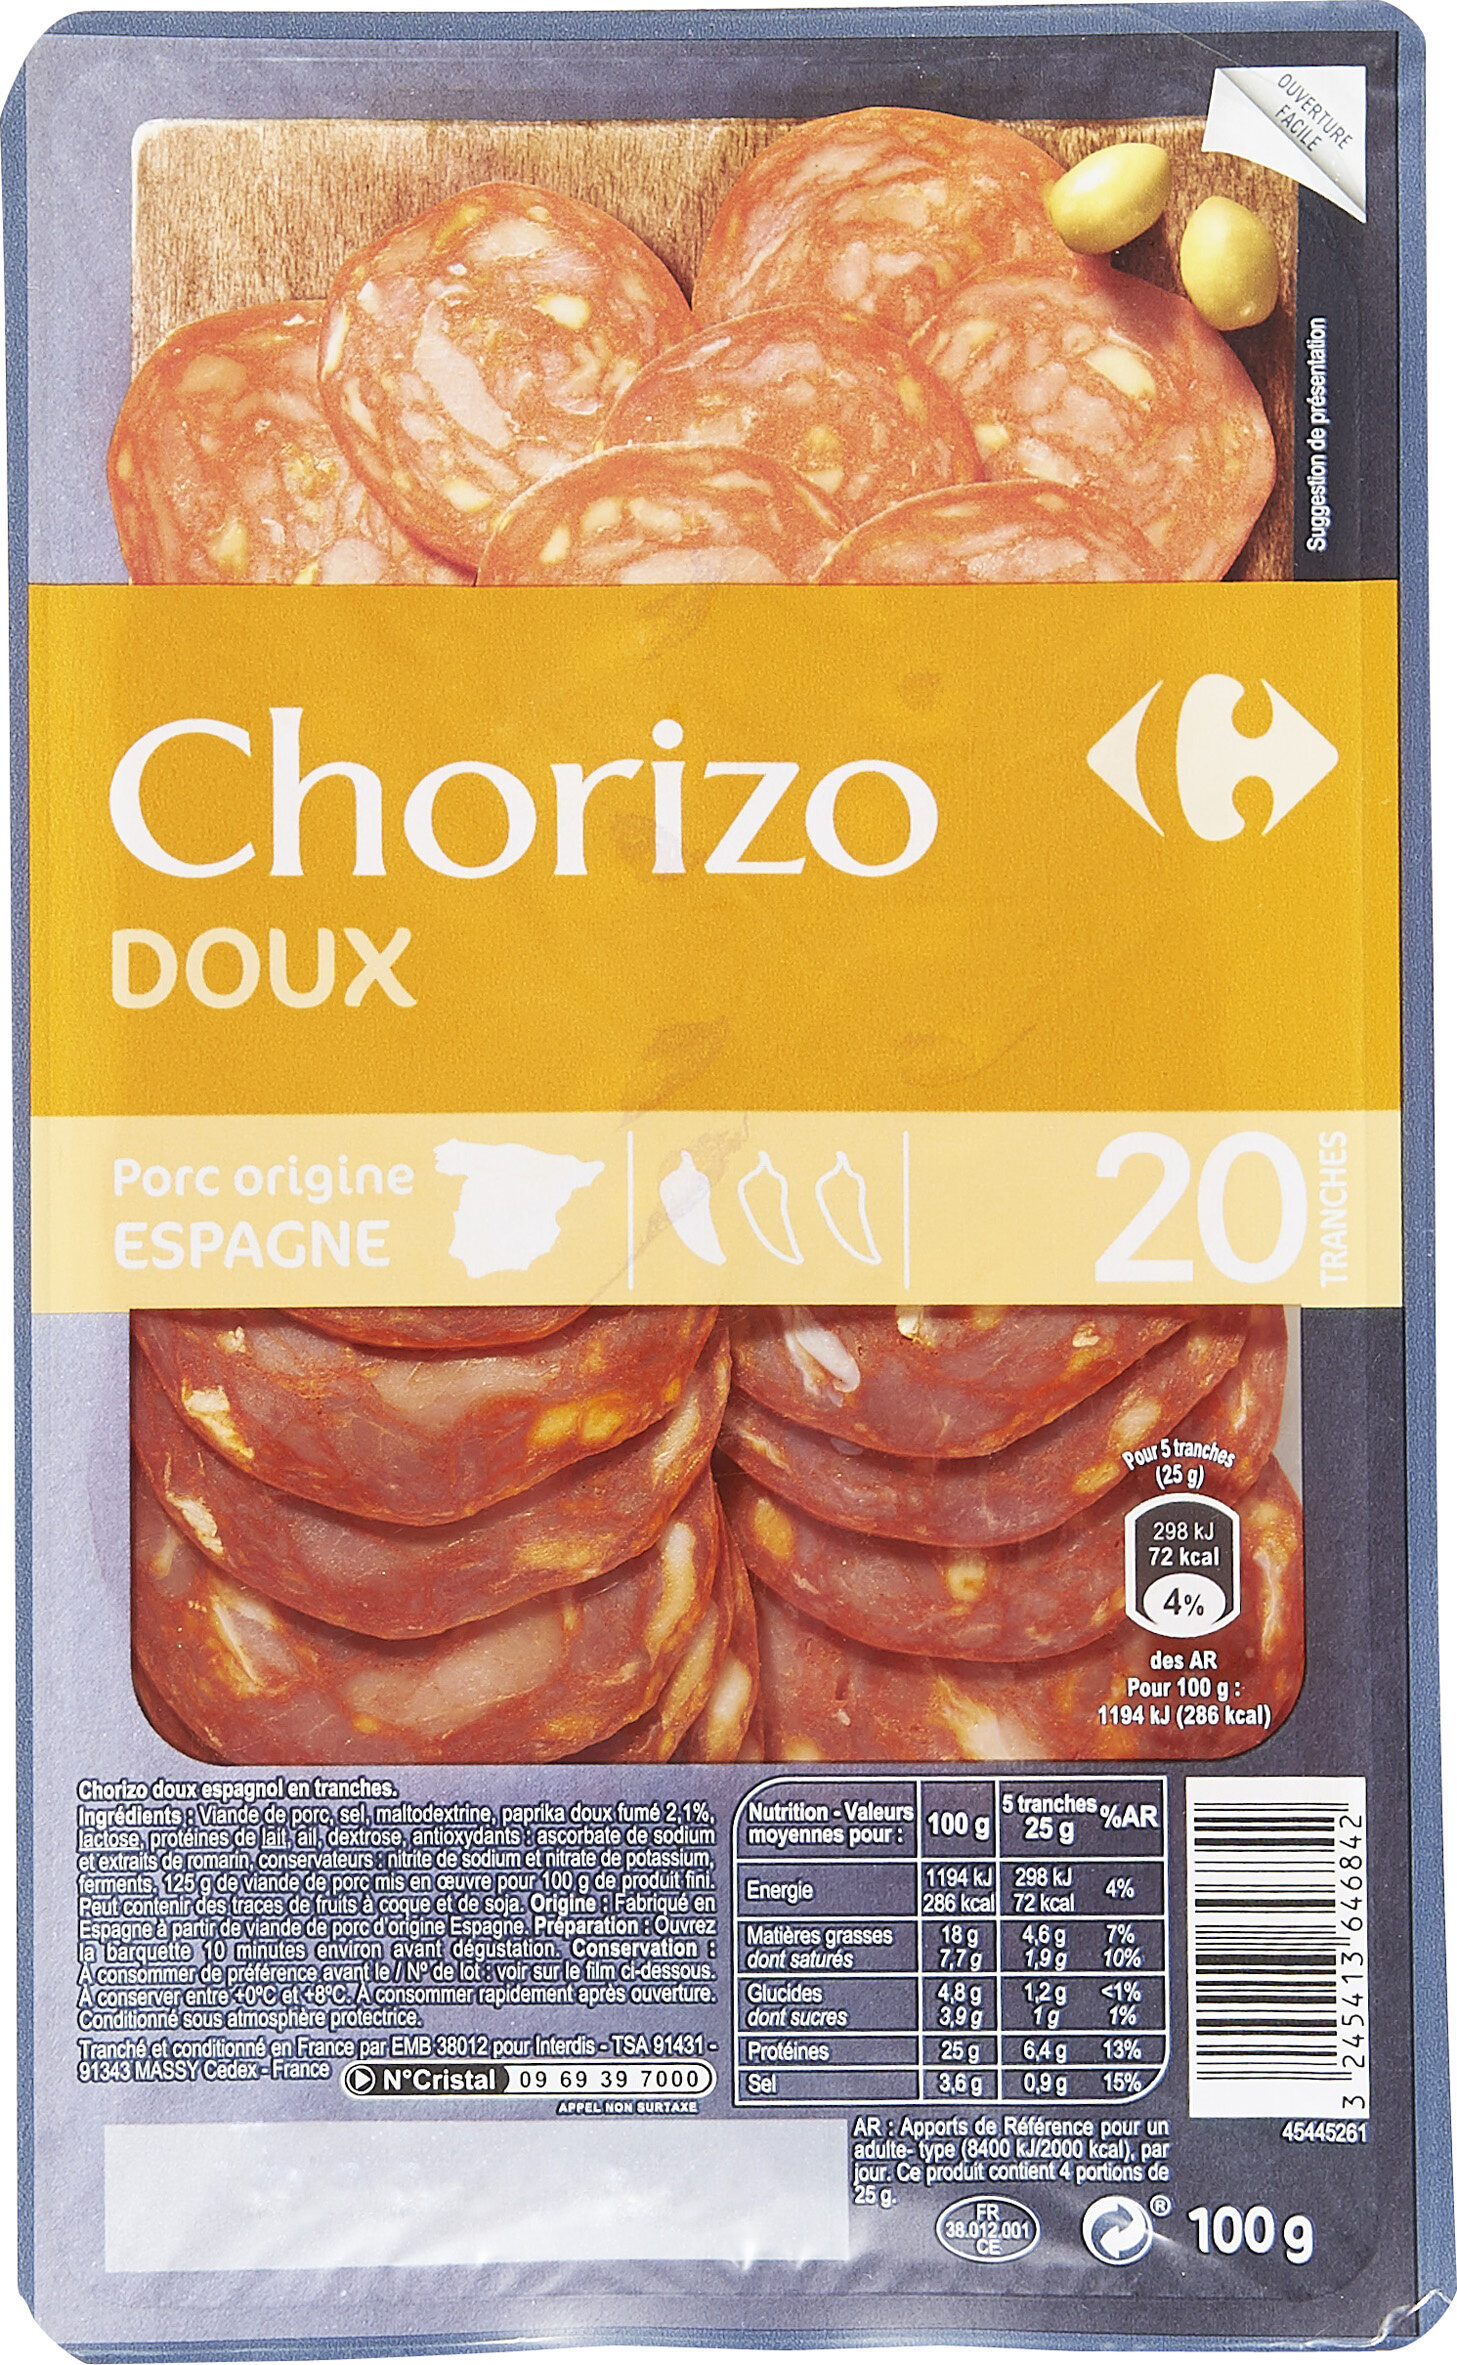 Chorizo doux - Product - fr